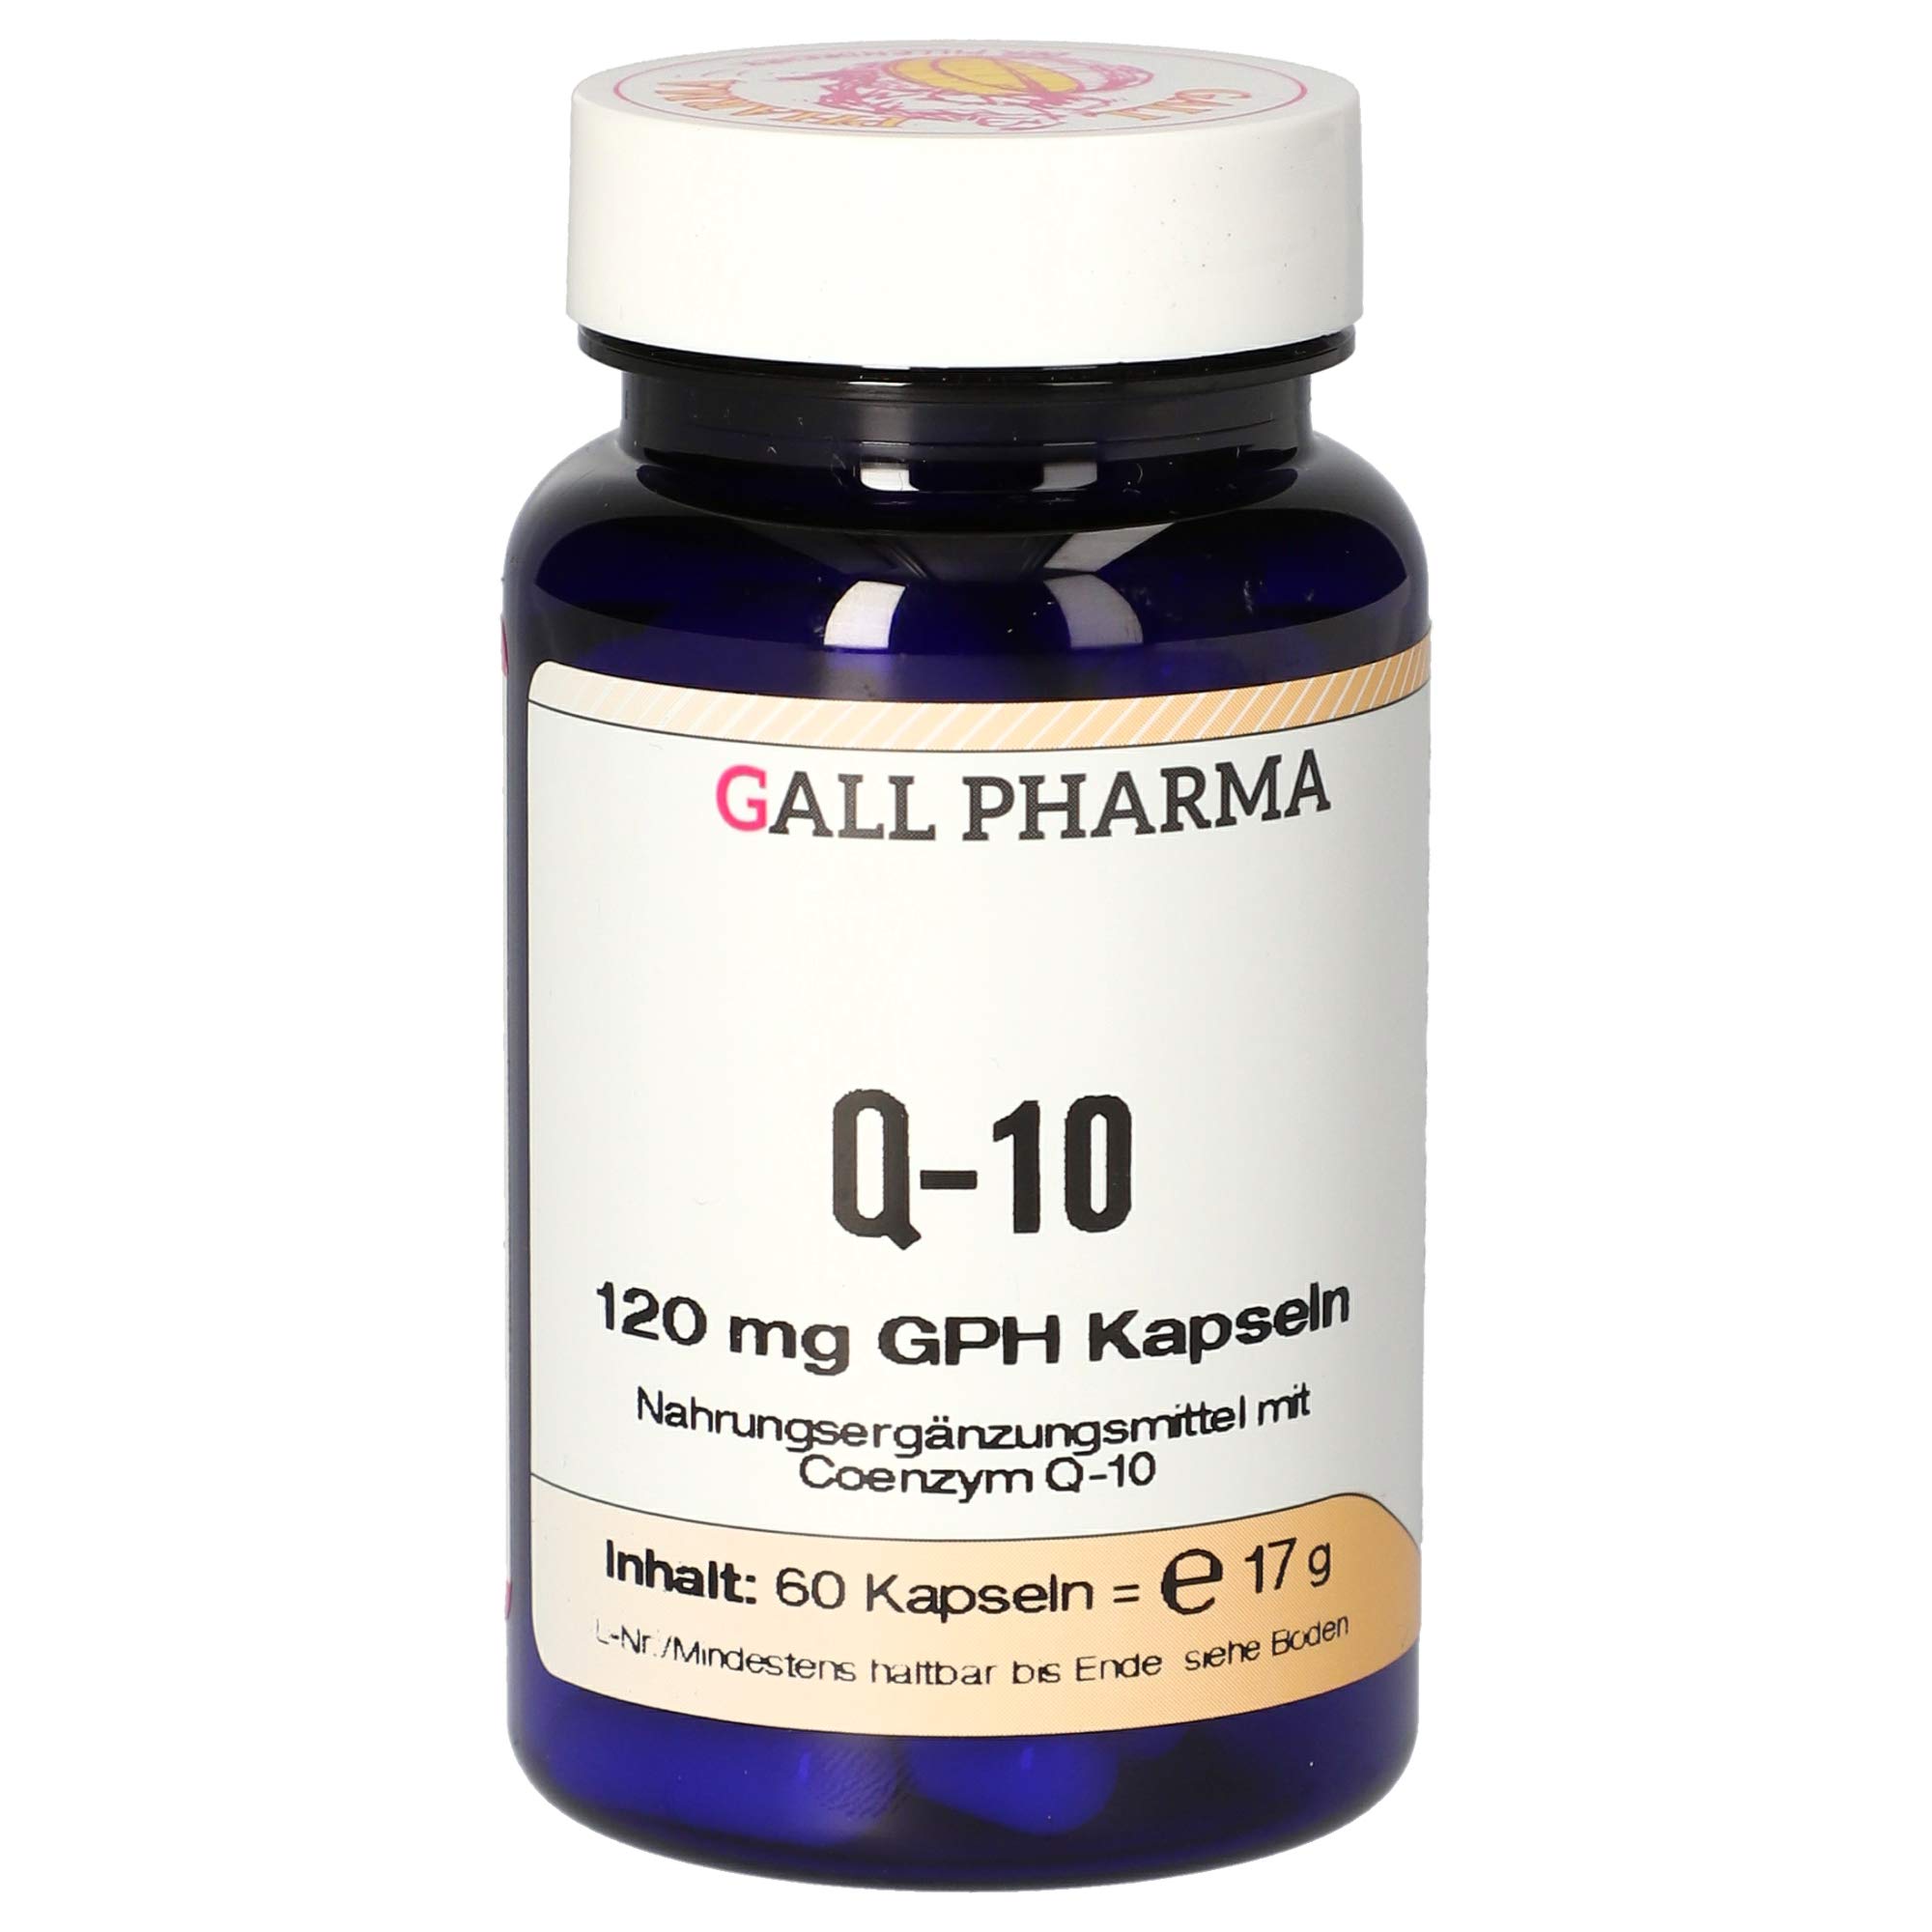 Gall Pharma Q-10 120 mg GPH Kapseln, 1er Pack (1 x 60 Stück)